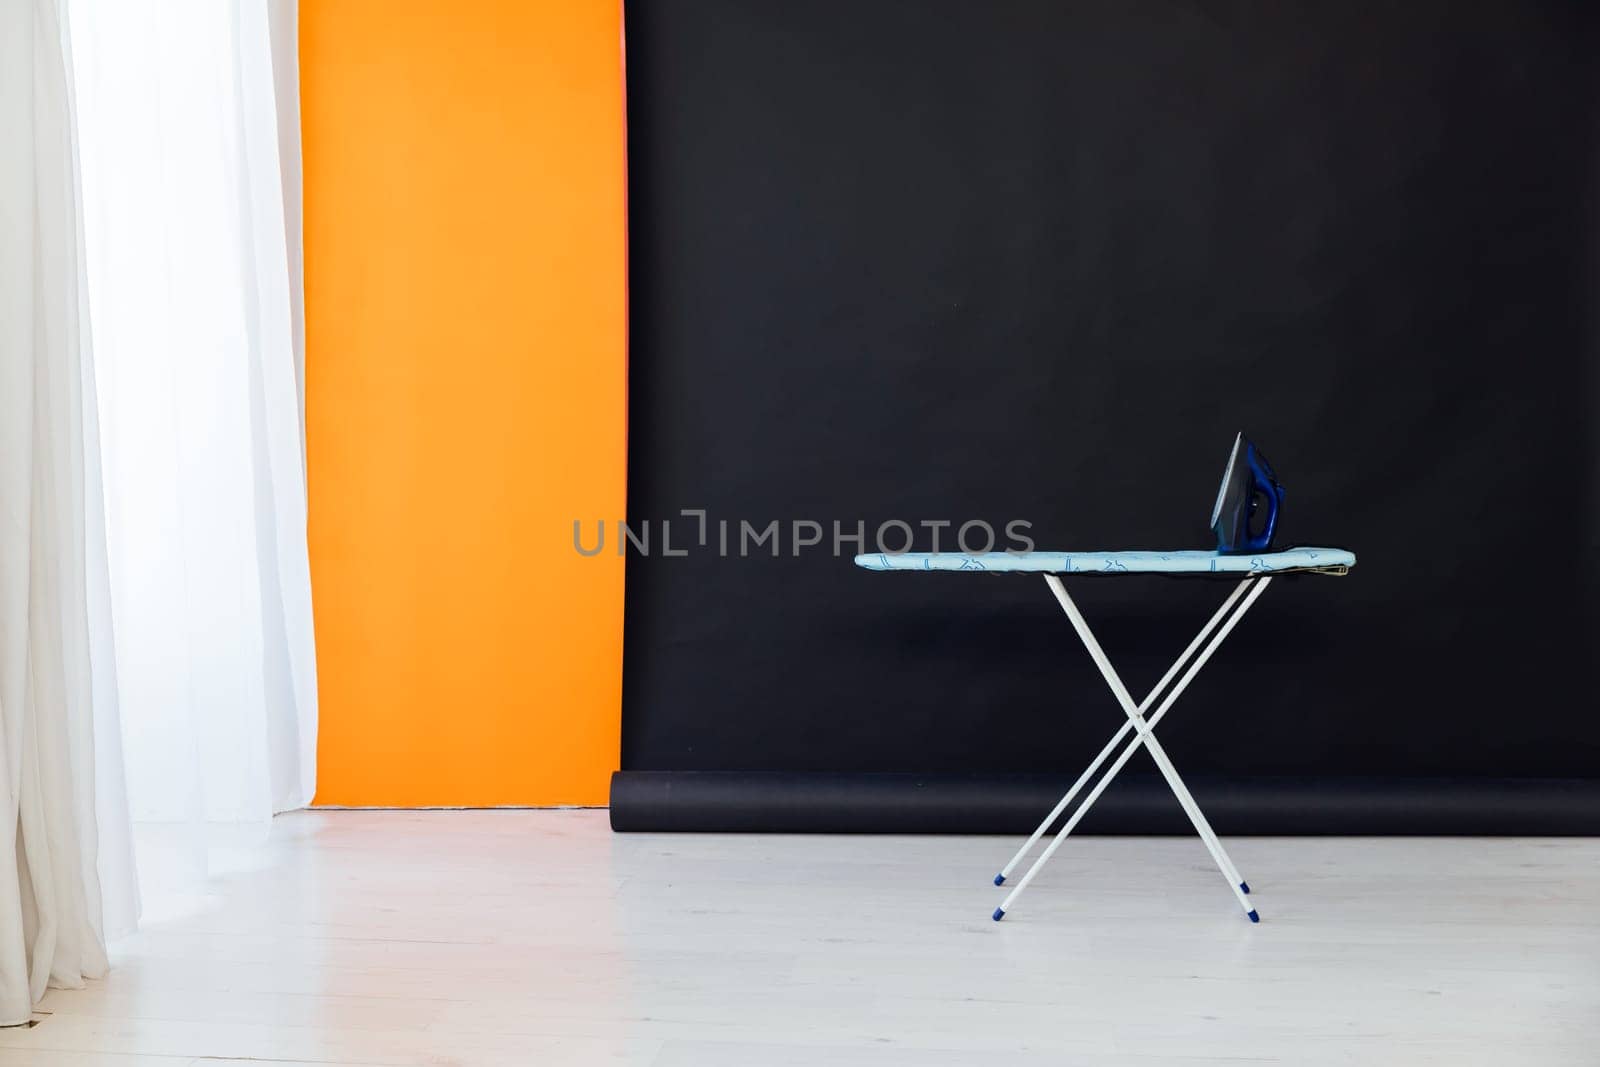 Ironing board iron on black orange background interior by Simakov